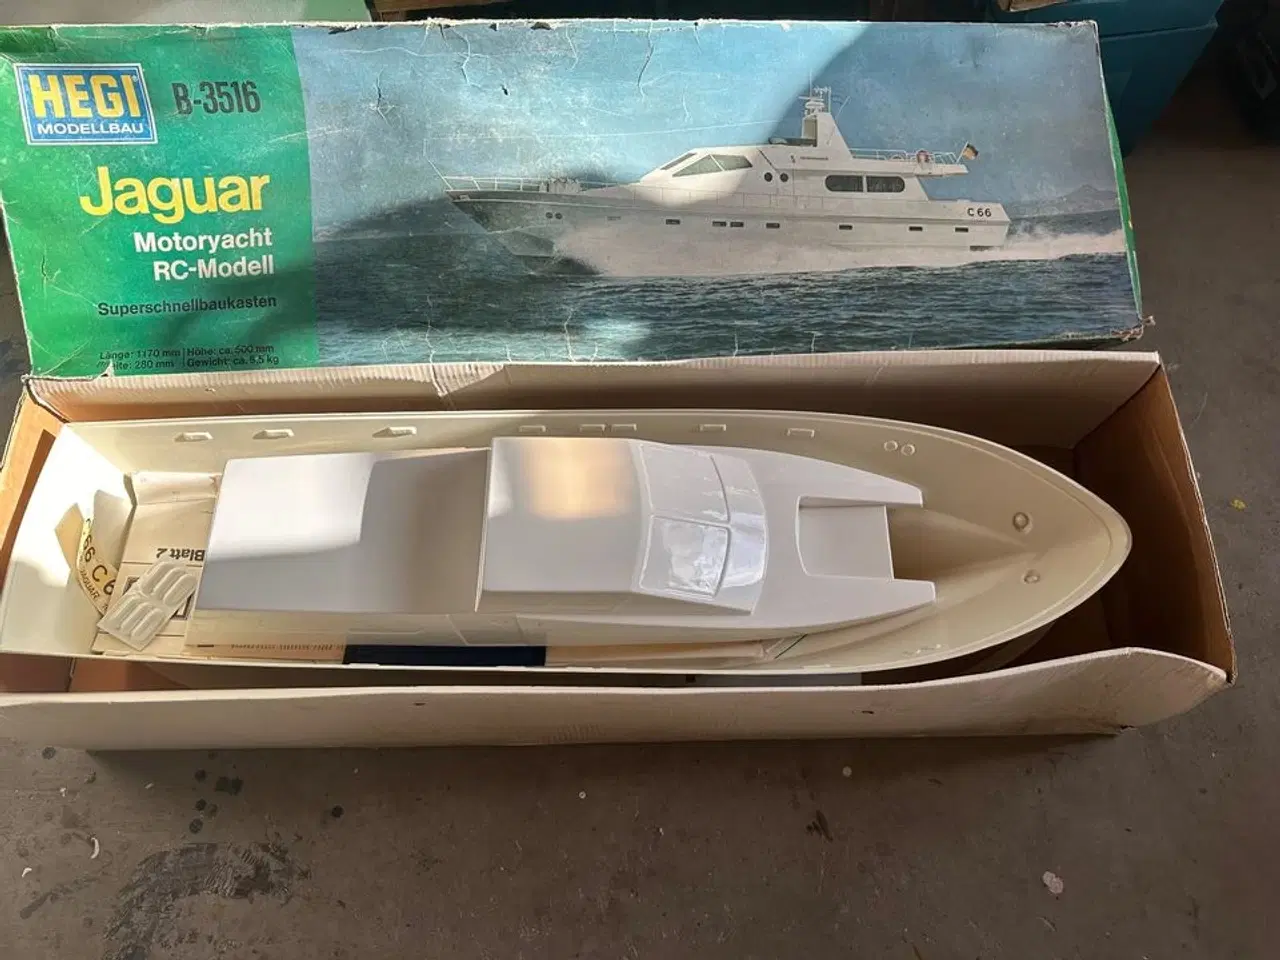 Billede 2 - Hegi Jaguar Yacht  Stort byggesæt ikke påbegyndt